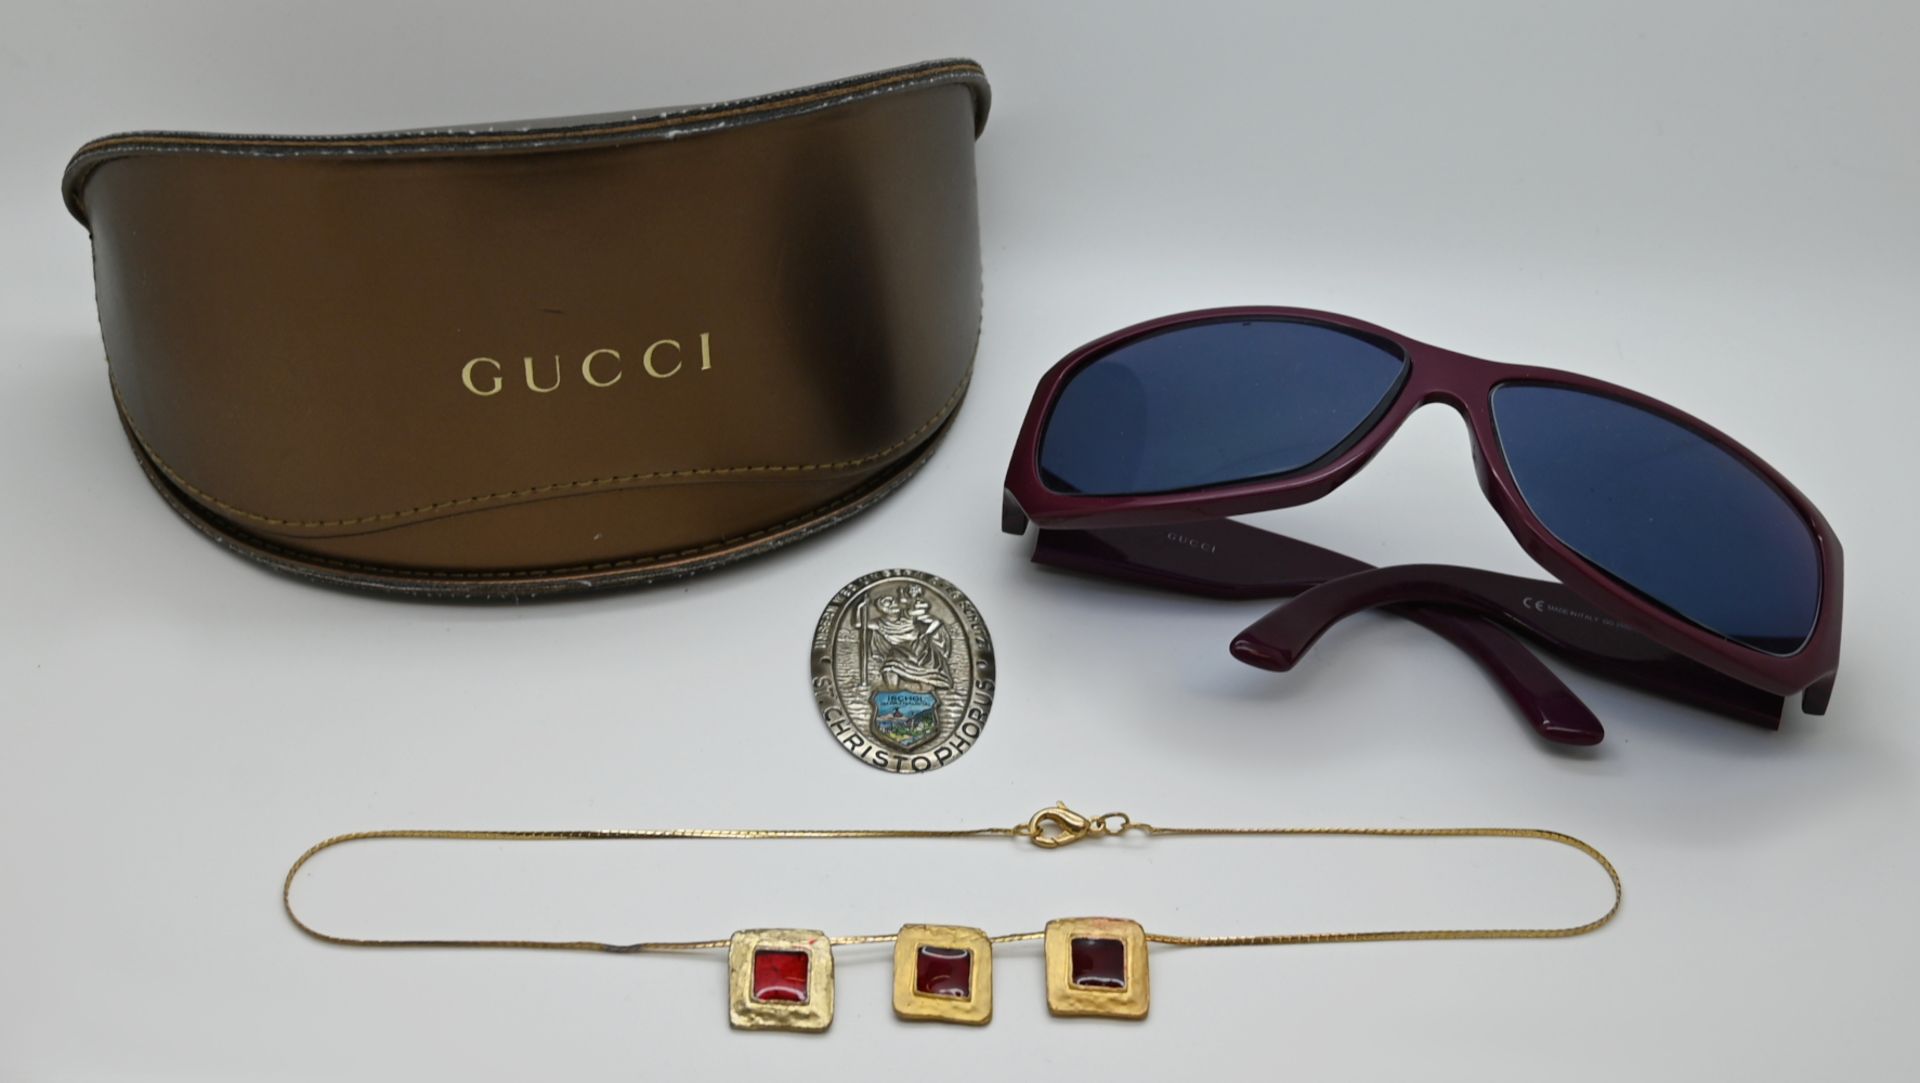 1 Sonnenbrille GUCCI, lila, mit Gläsern mit Stärke, Originalschatulle, 1 Modekette, 1 Andenken "Isch